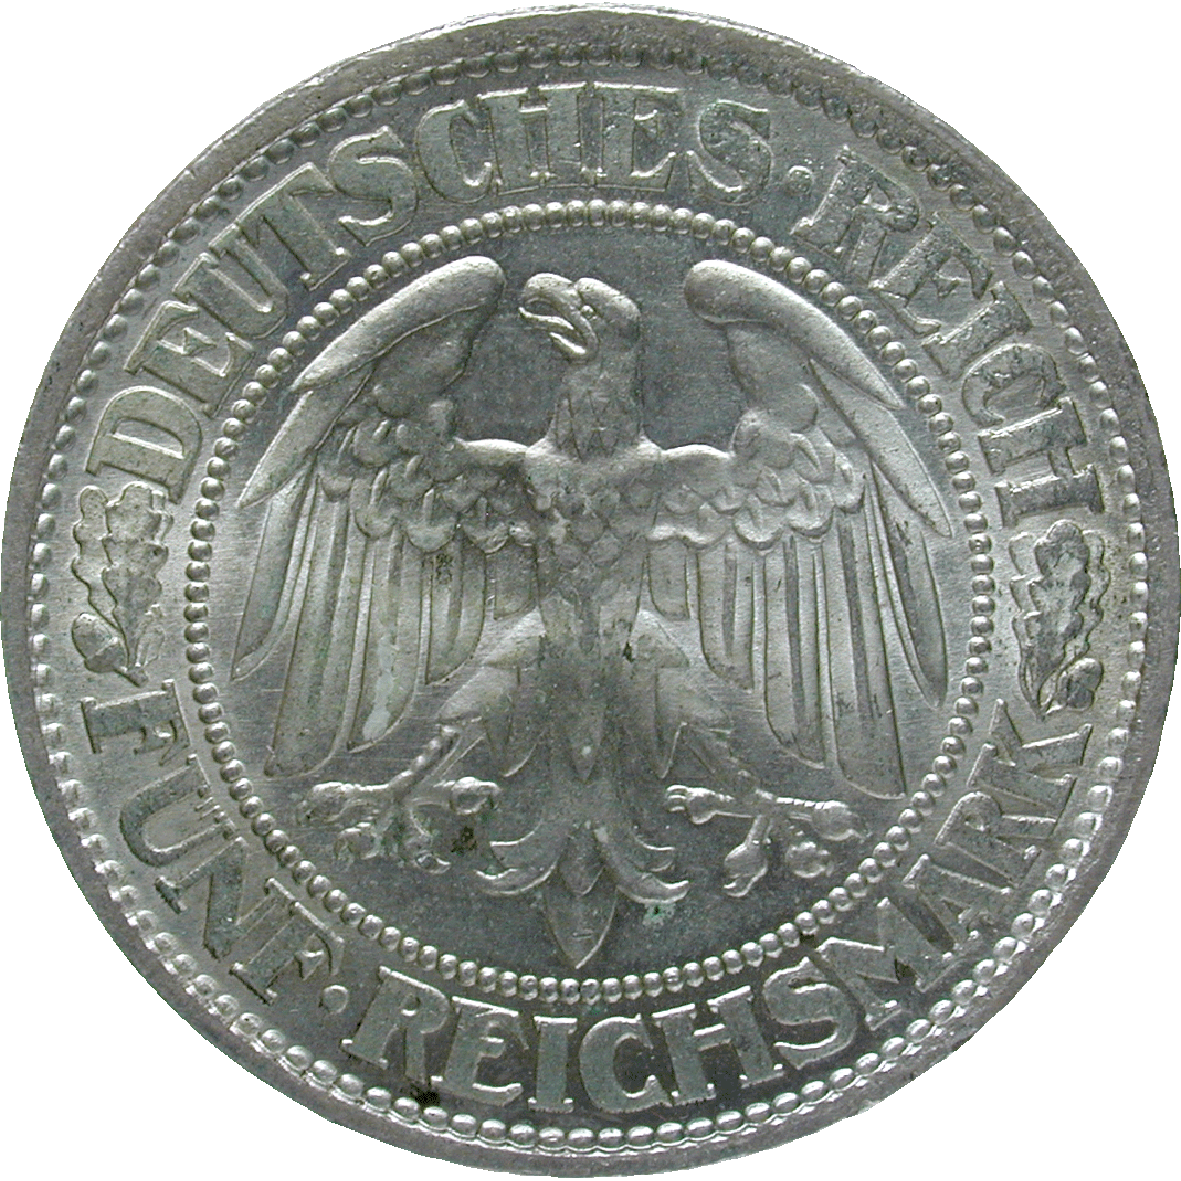 German Empire, Weimar Republic, 5 Reichsmark 1932 (obverse)